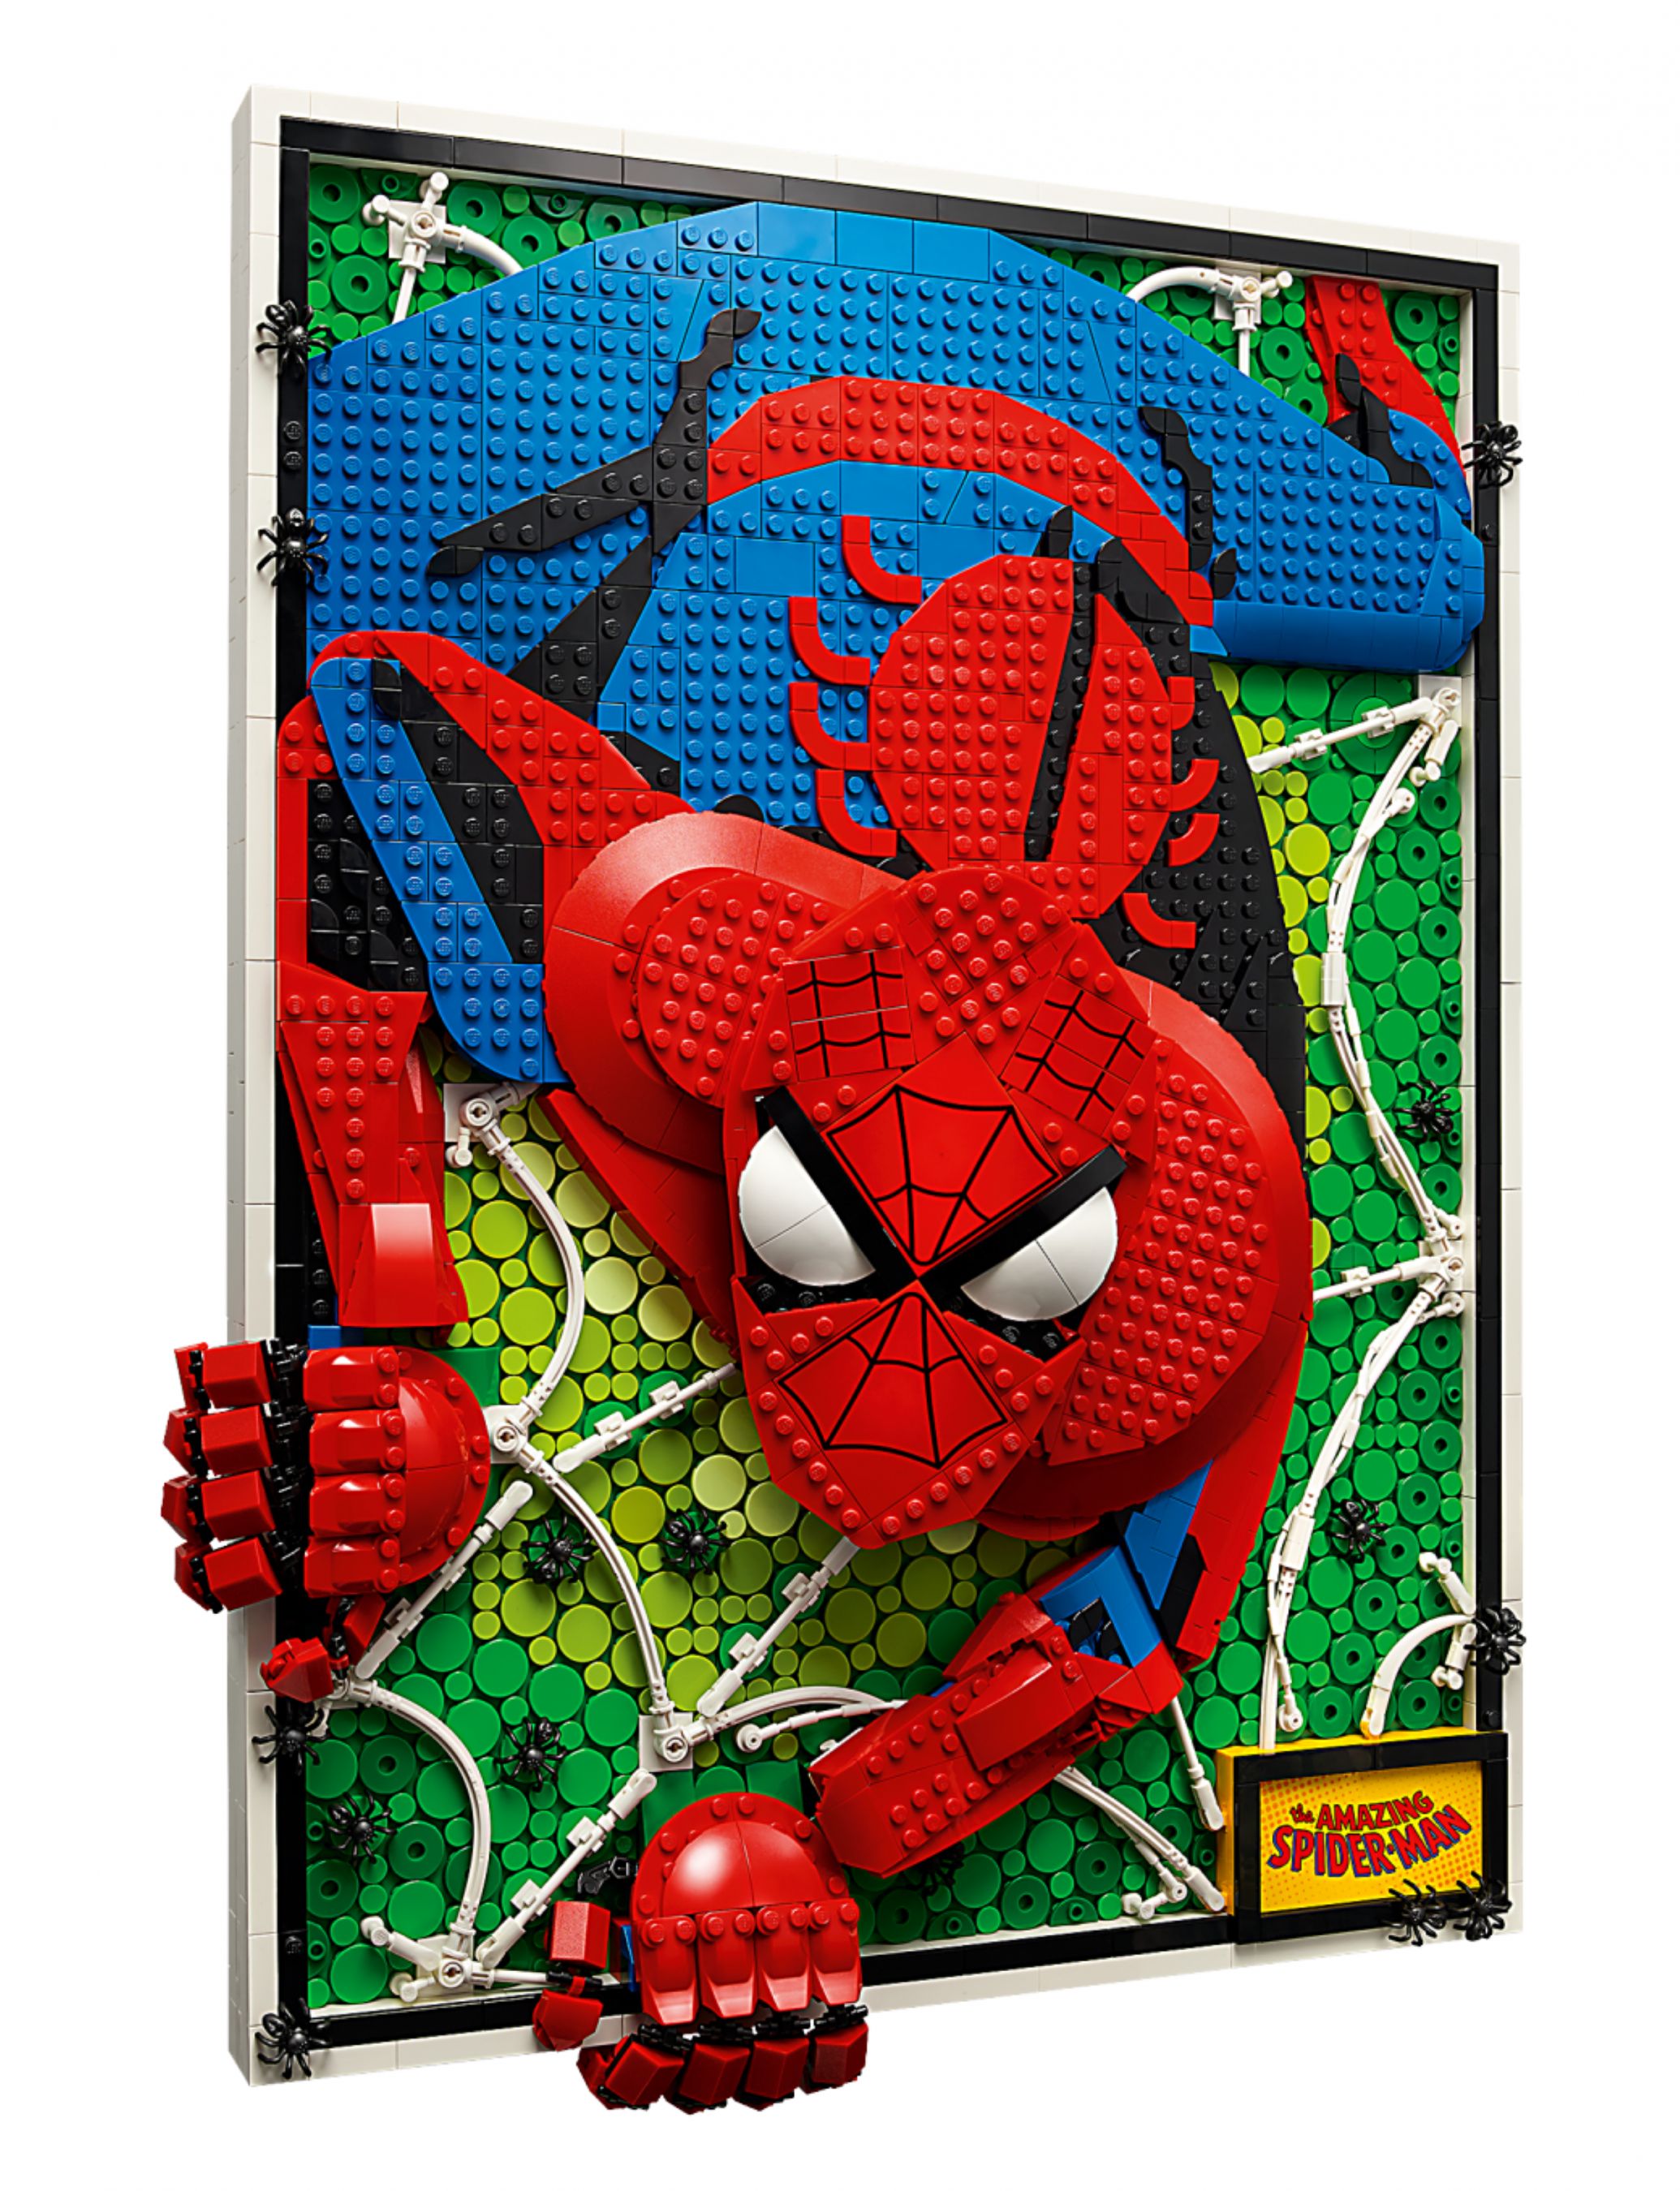 LEGO ART 31209 The Amazing Spider-Man LEGO_31209_alt2.jpg